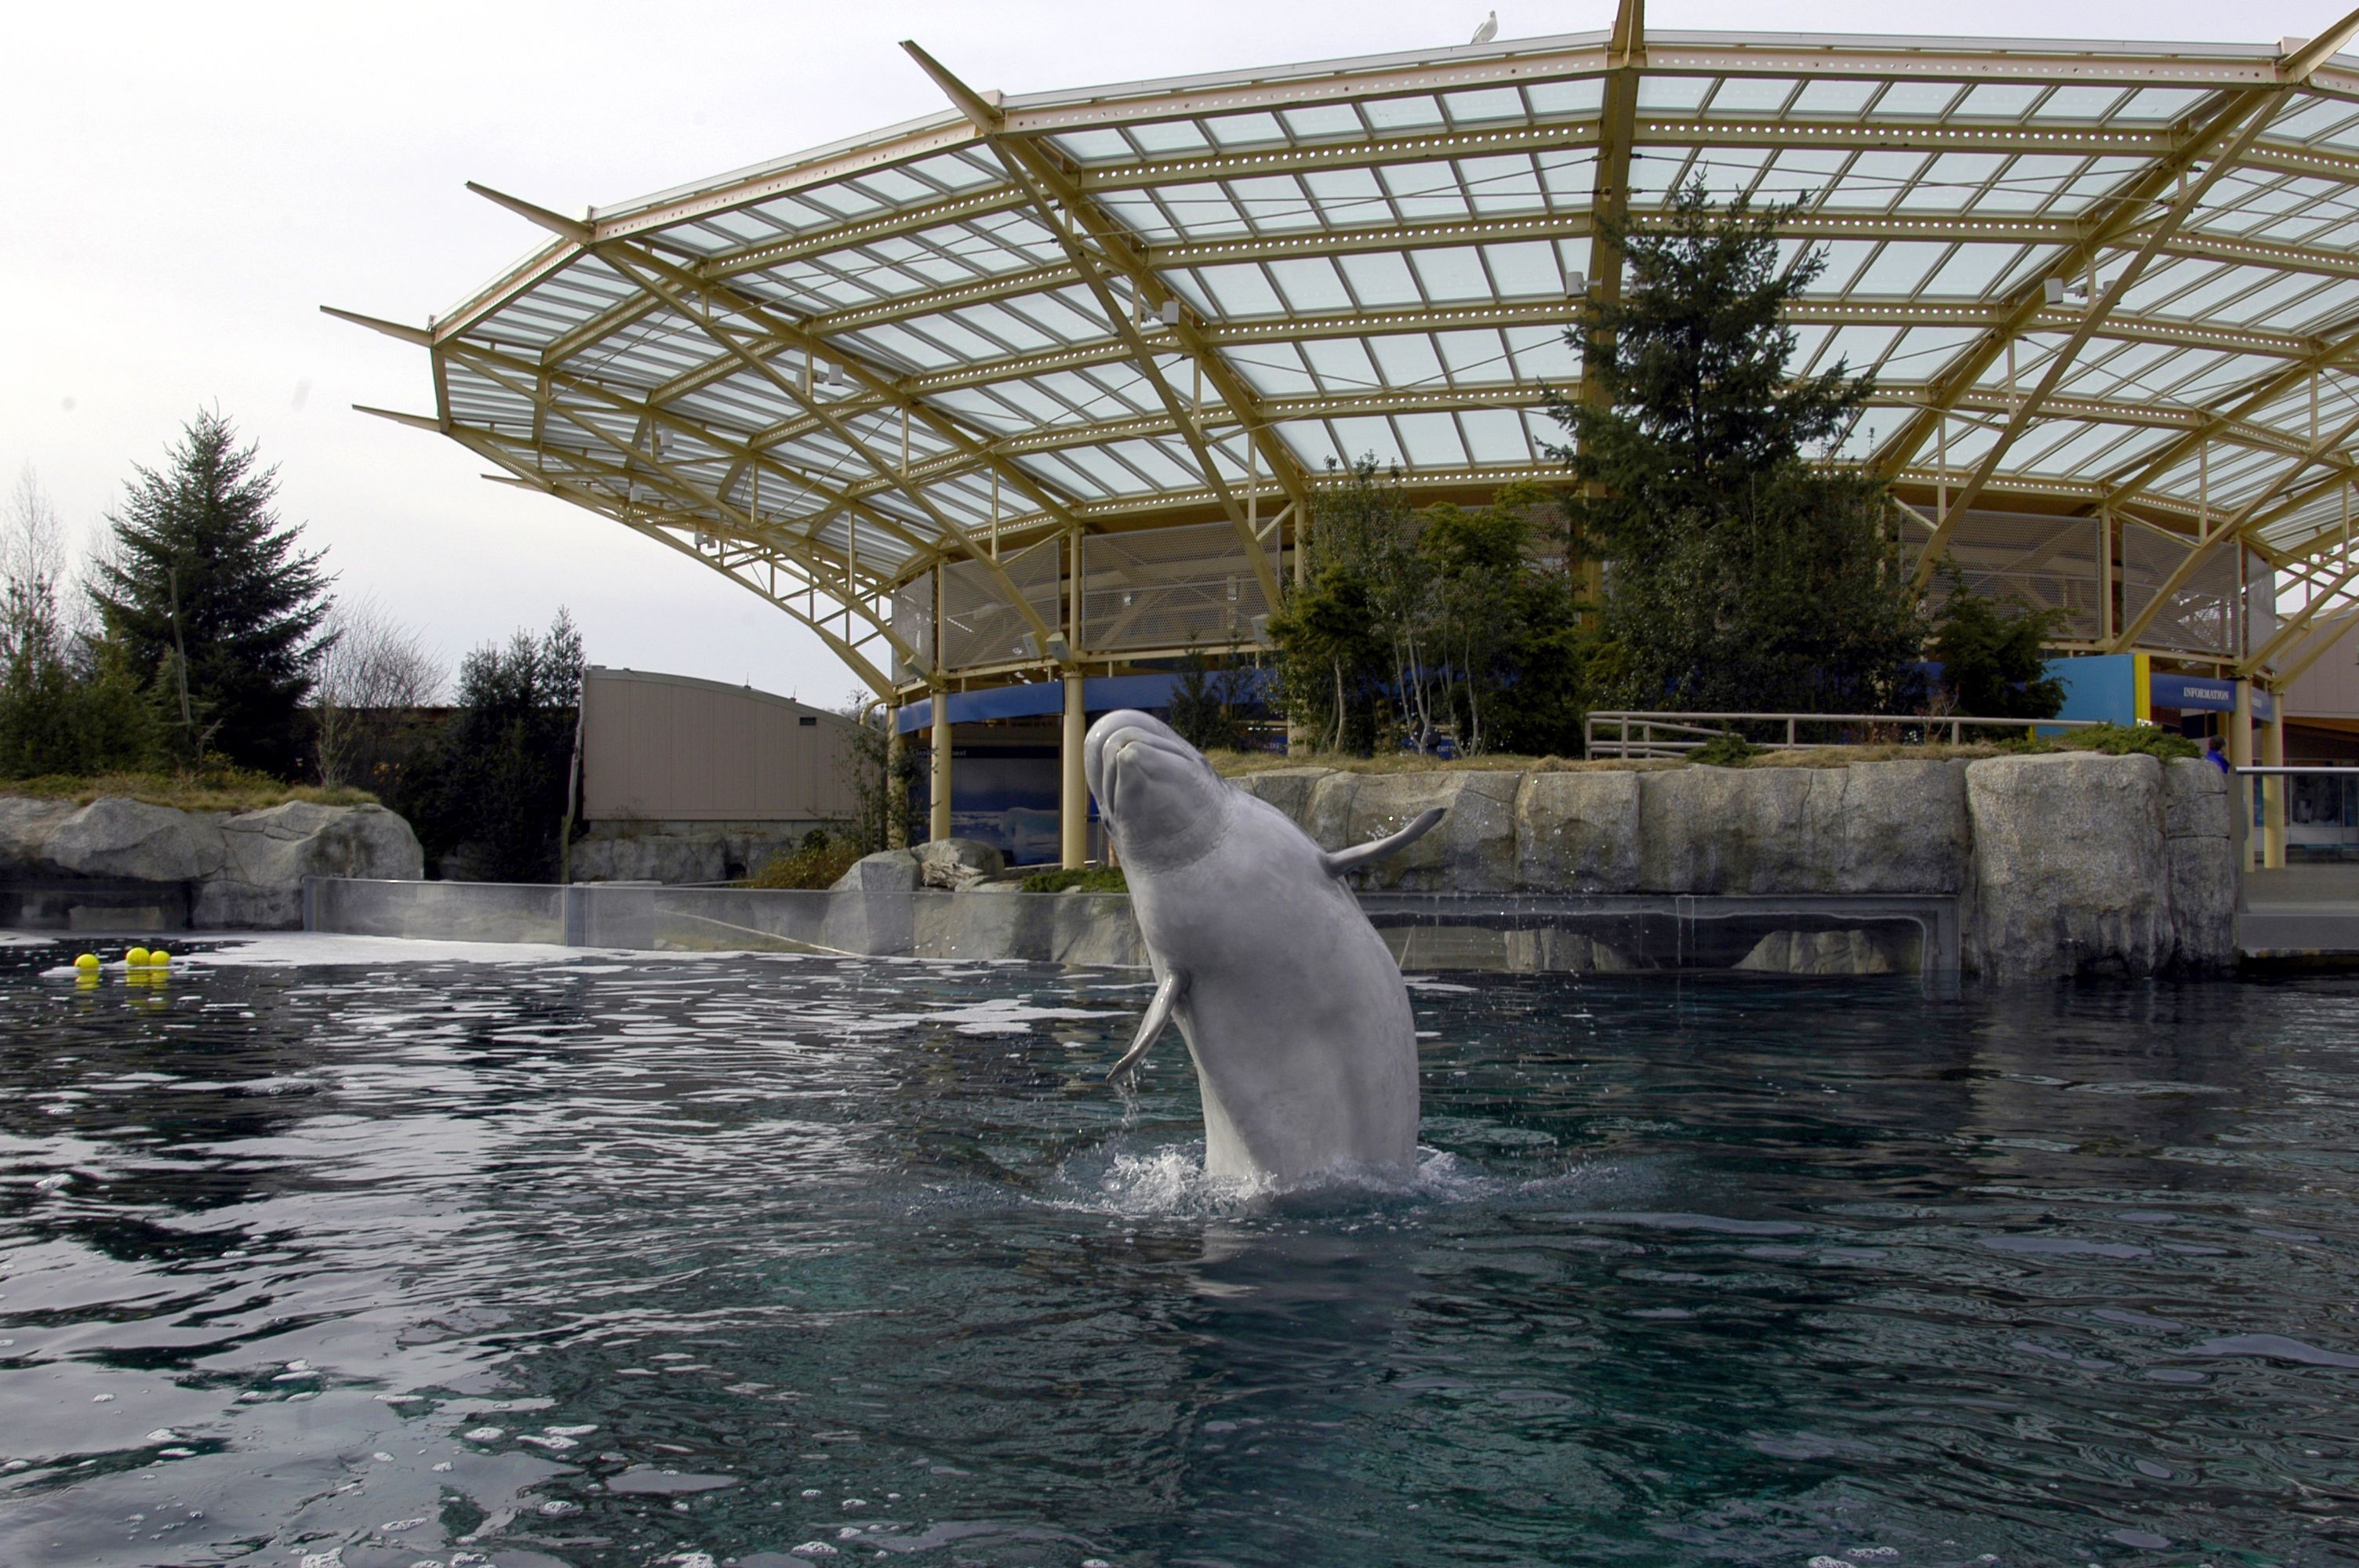 Mystic Aquarium (Connecticut), Whale watching, Tourist attraction, Connecticut, 3010x2000 HD Desktop